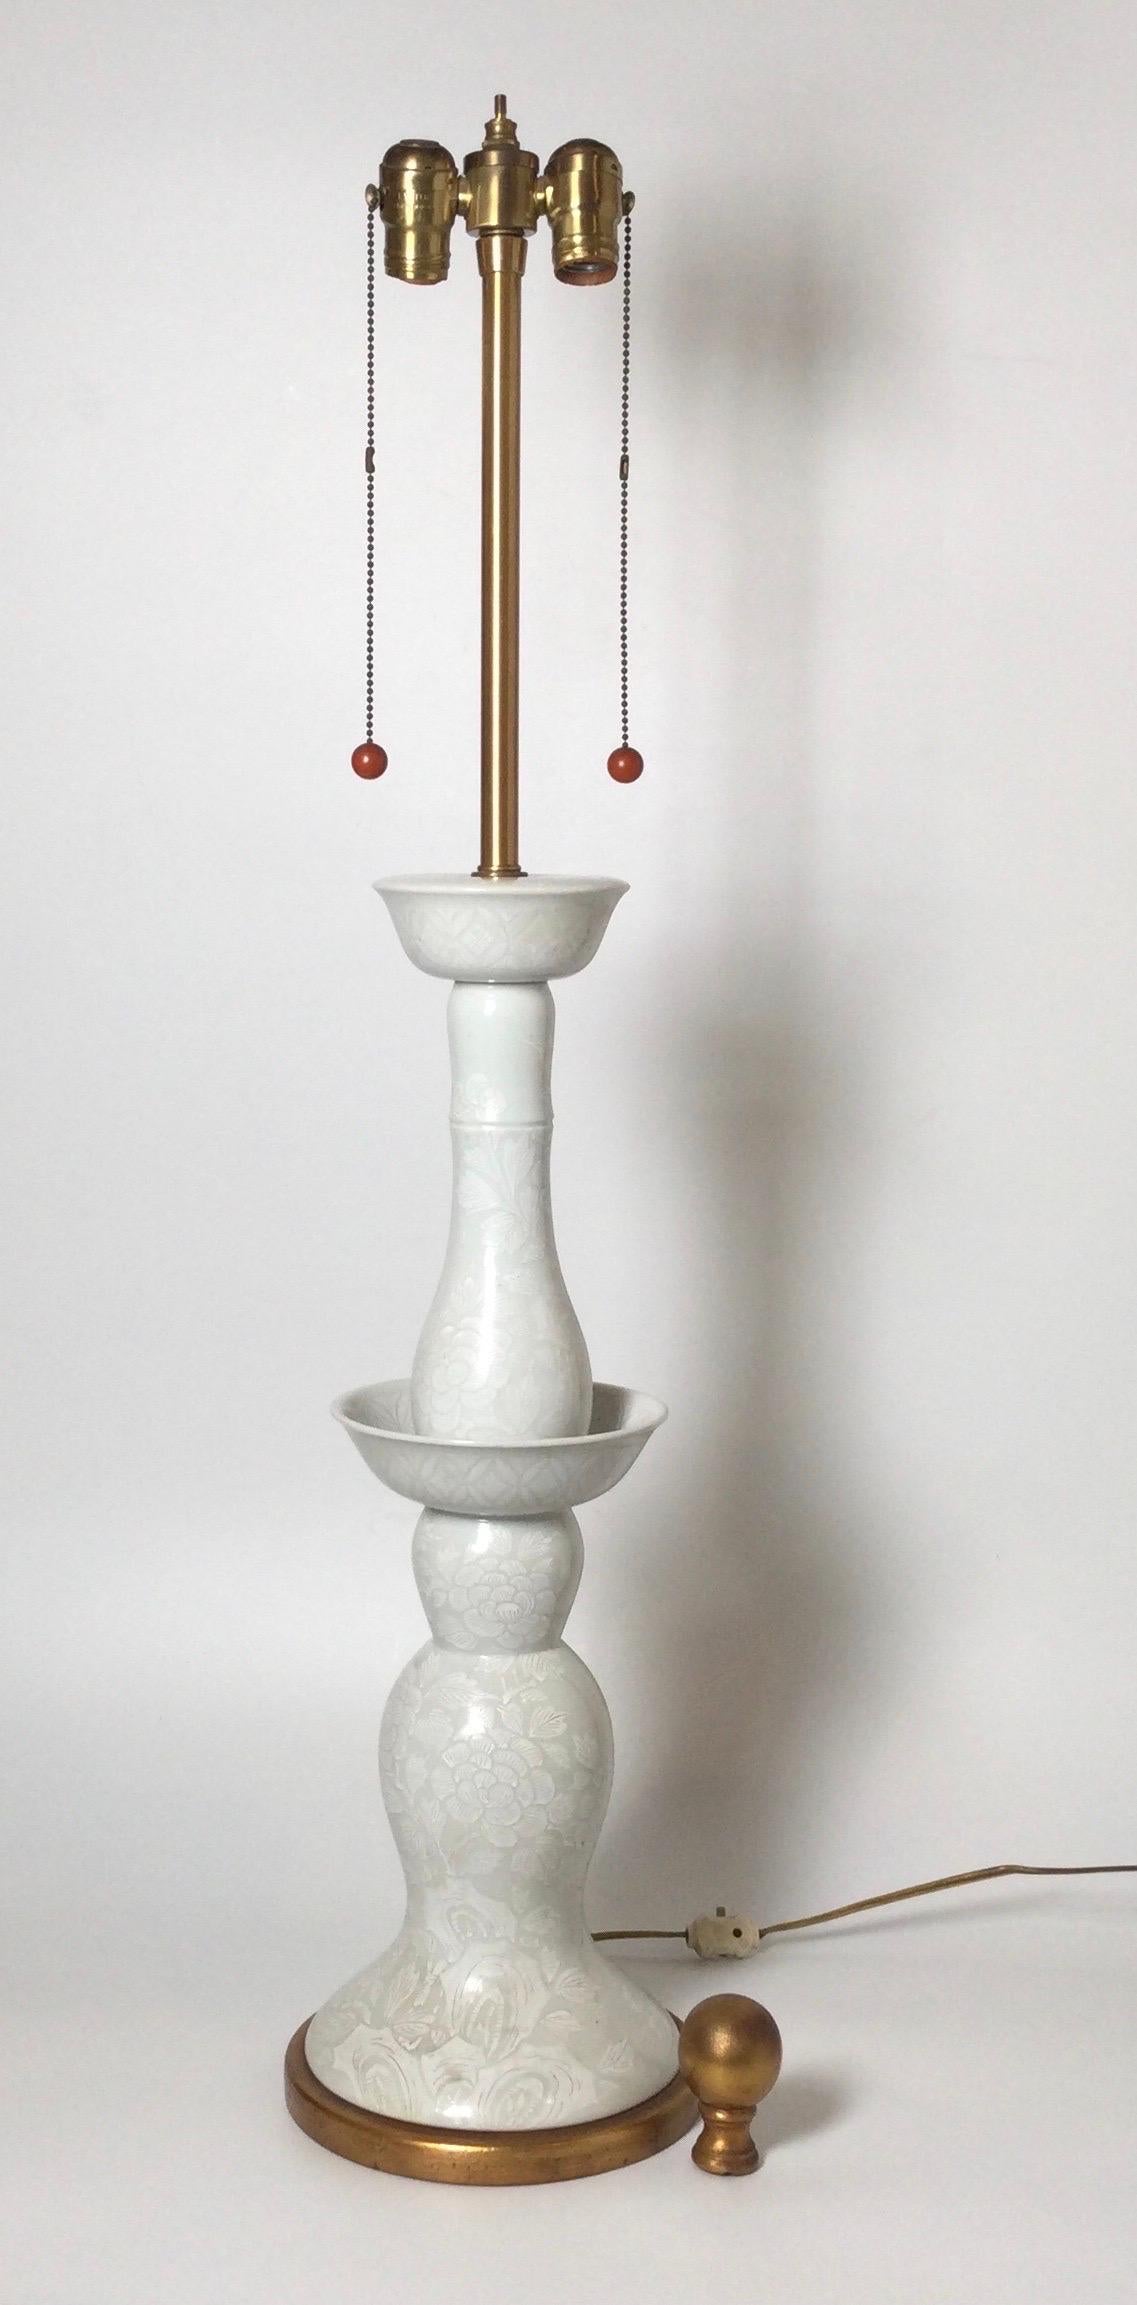 Une paire chic de hautes lampes en porcelaine de la Régence d'Hollywood. La porcelaine blanc cassé brillant avec une finition motif sur motif en excellent état. Les lampes avec des douilles pour deux ampoules. Les teintes sont utilisées à des fins